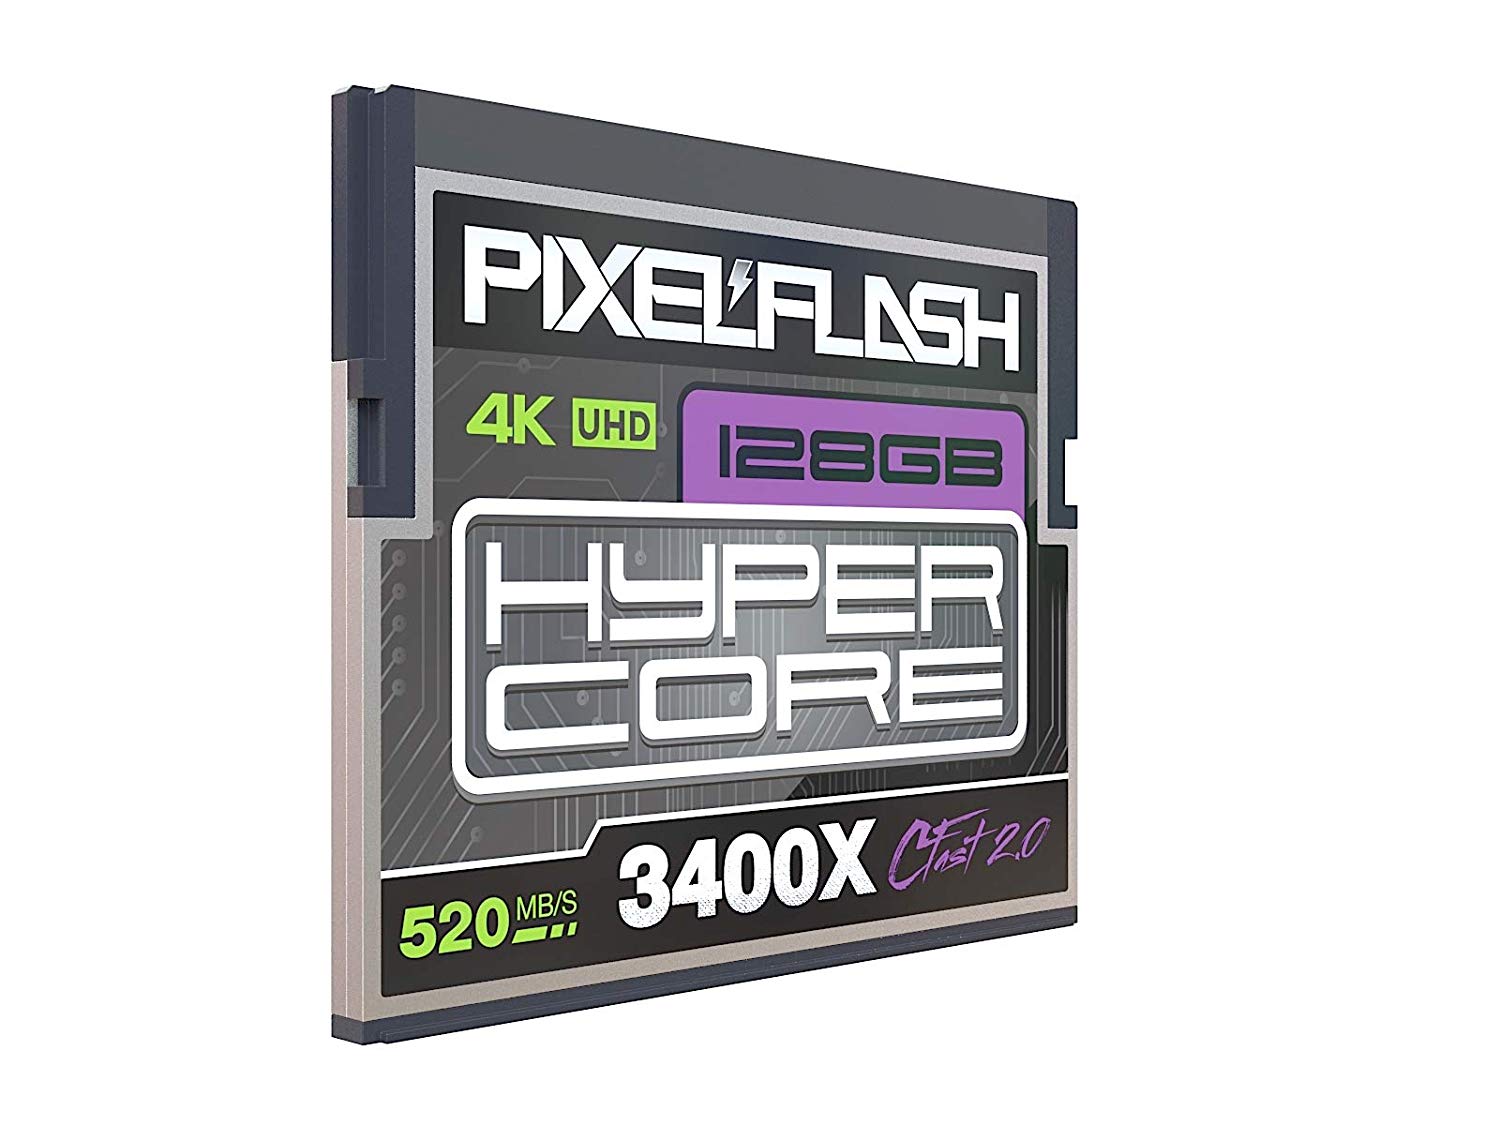 Tarjeta de memoria PixelFlash Cfast 2.0 de 128GB, versión estándar 3400X para Canon C300, XC10, XC15, Hasselblad, Blackmagic Cinema 4K, Phase One, Leica y más